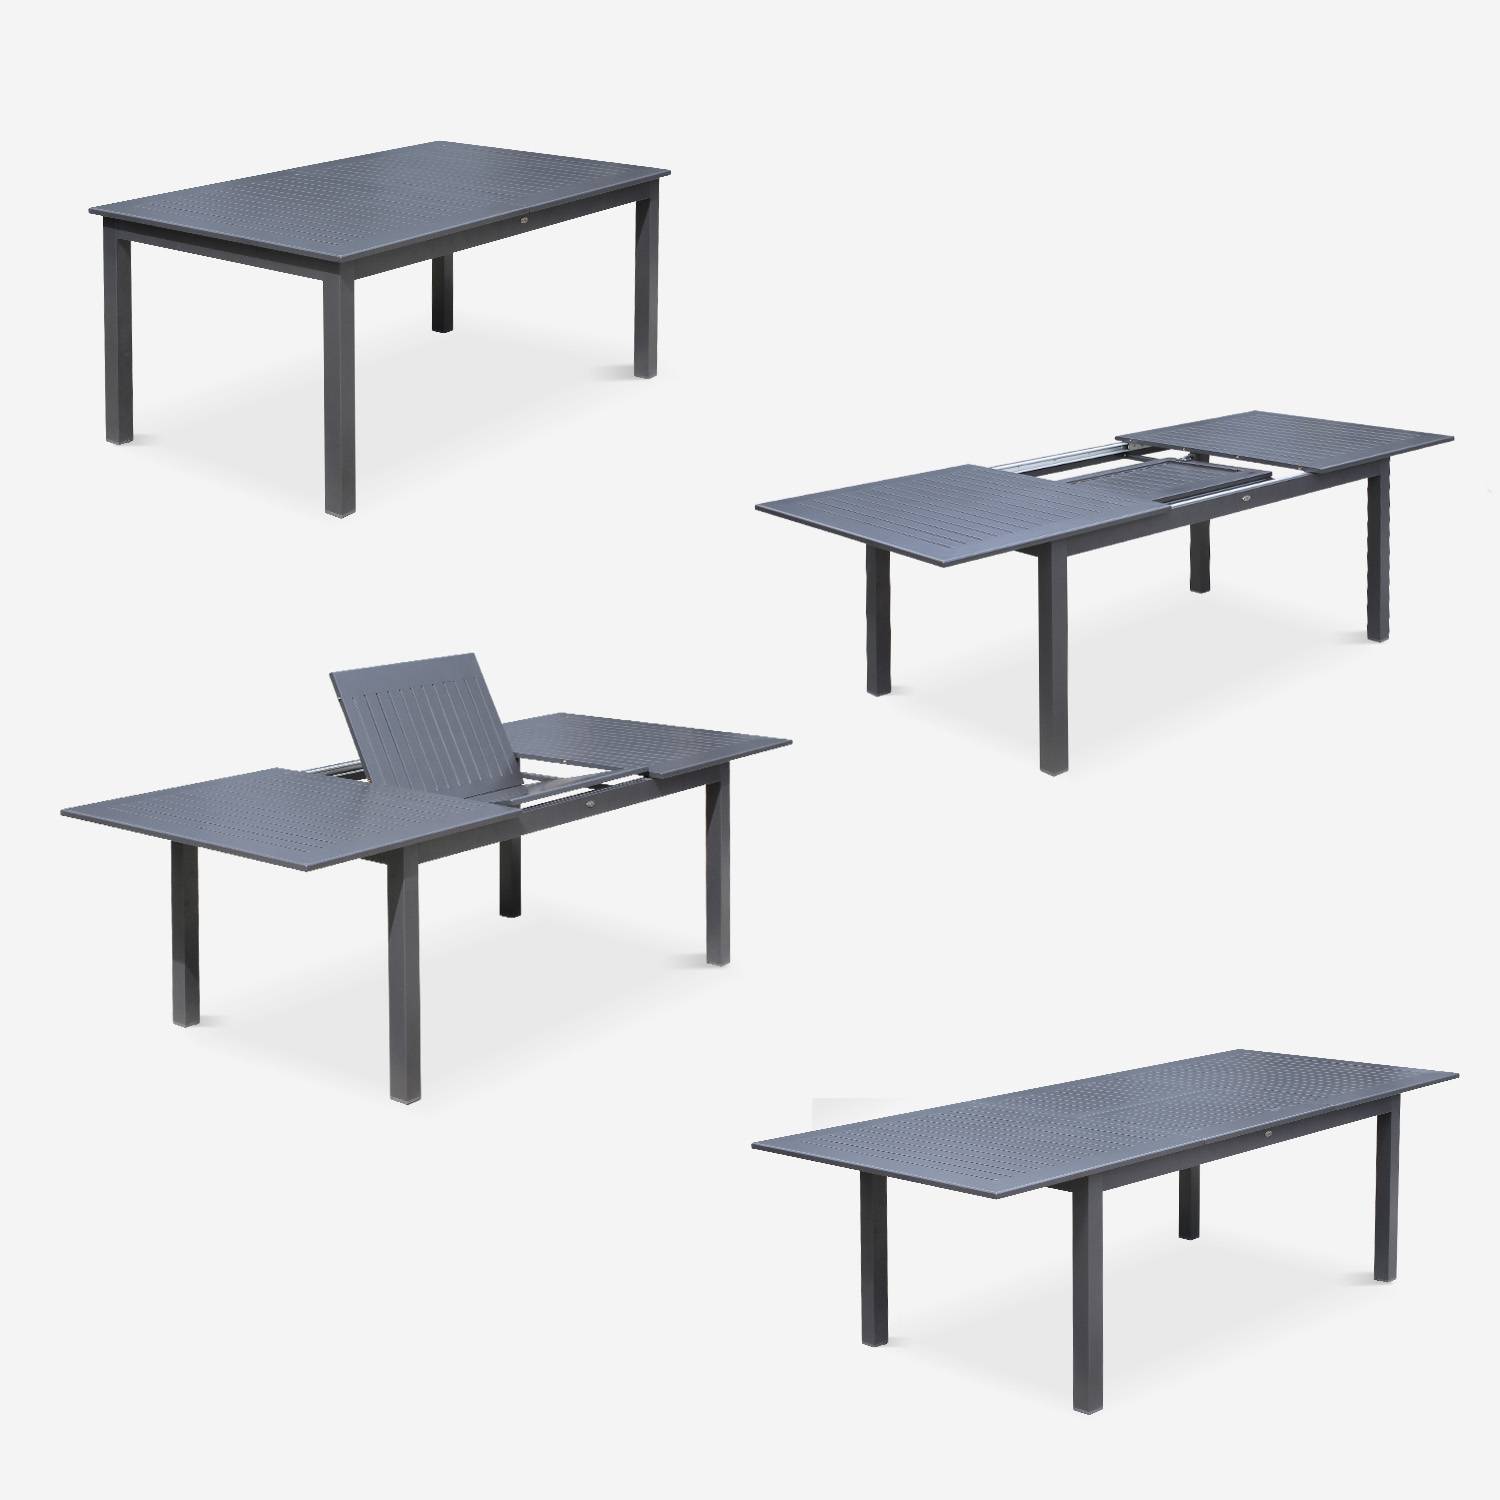 Set da giardino con tavolo allungabile - modello: Chicago, colore: Antracite - Tavolo in alluminio, dimensioni: 175/245cm con prolunga e 8 sedute in textilene,sweeek,Photo6